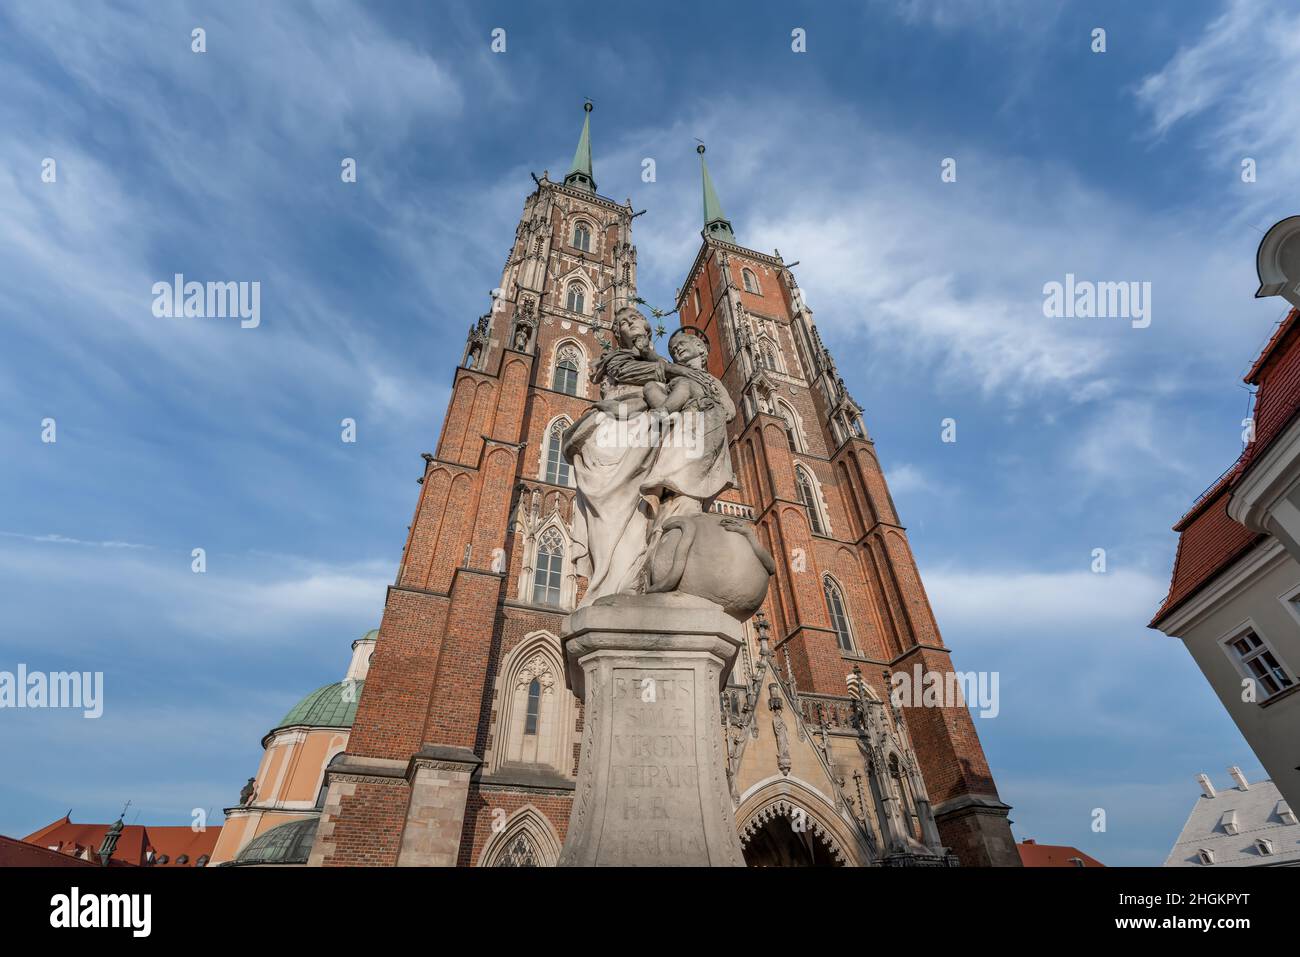 Estatua de Nuestra Señora Madre de Dios y Catedral de San Juan Bautista en la Isla Catedral (Ostrow Tumski) - Wroclaw, Polonia Foto de stock